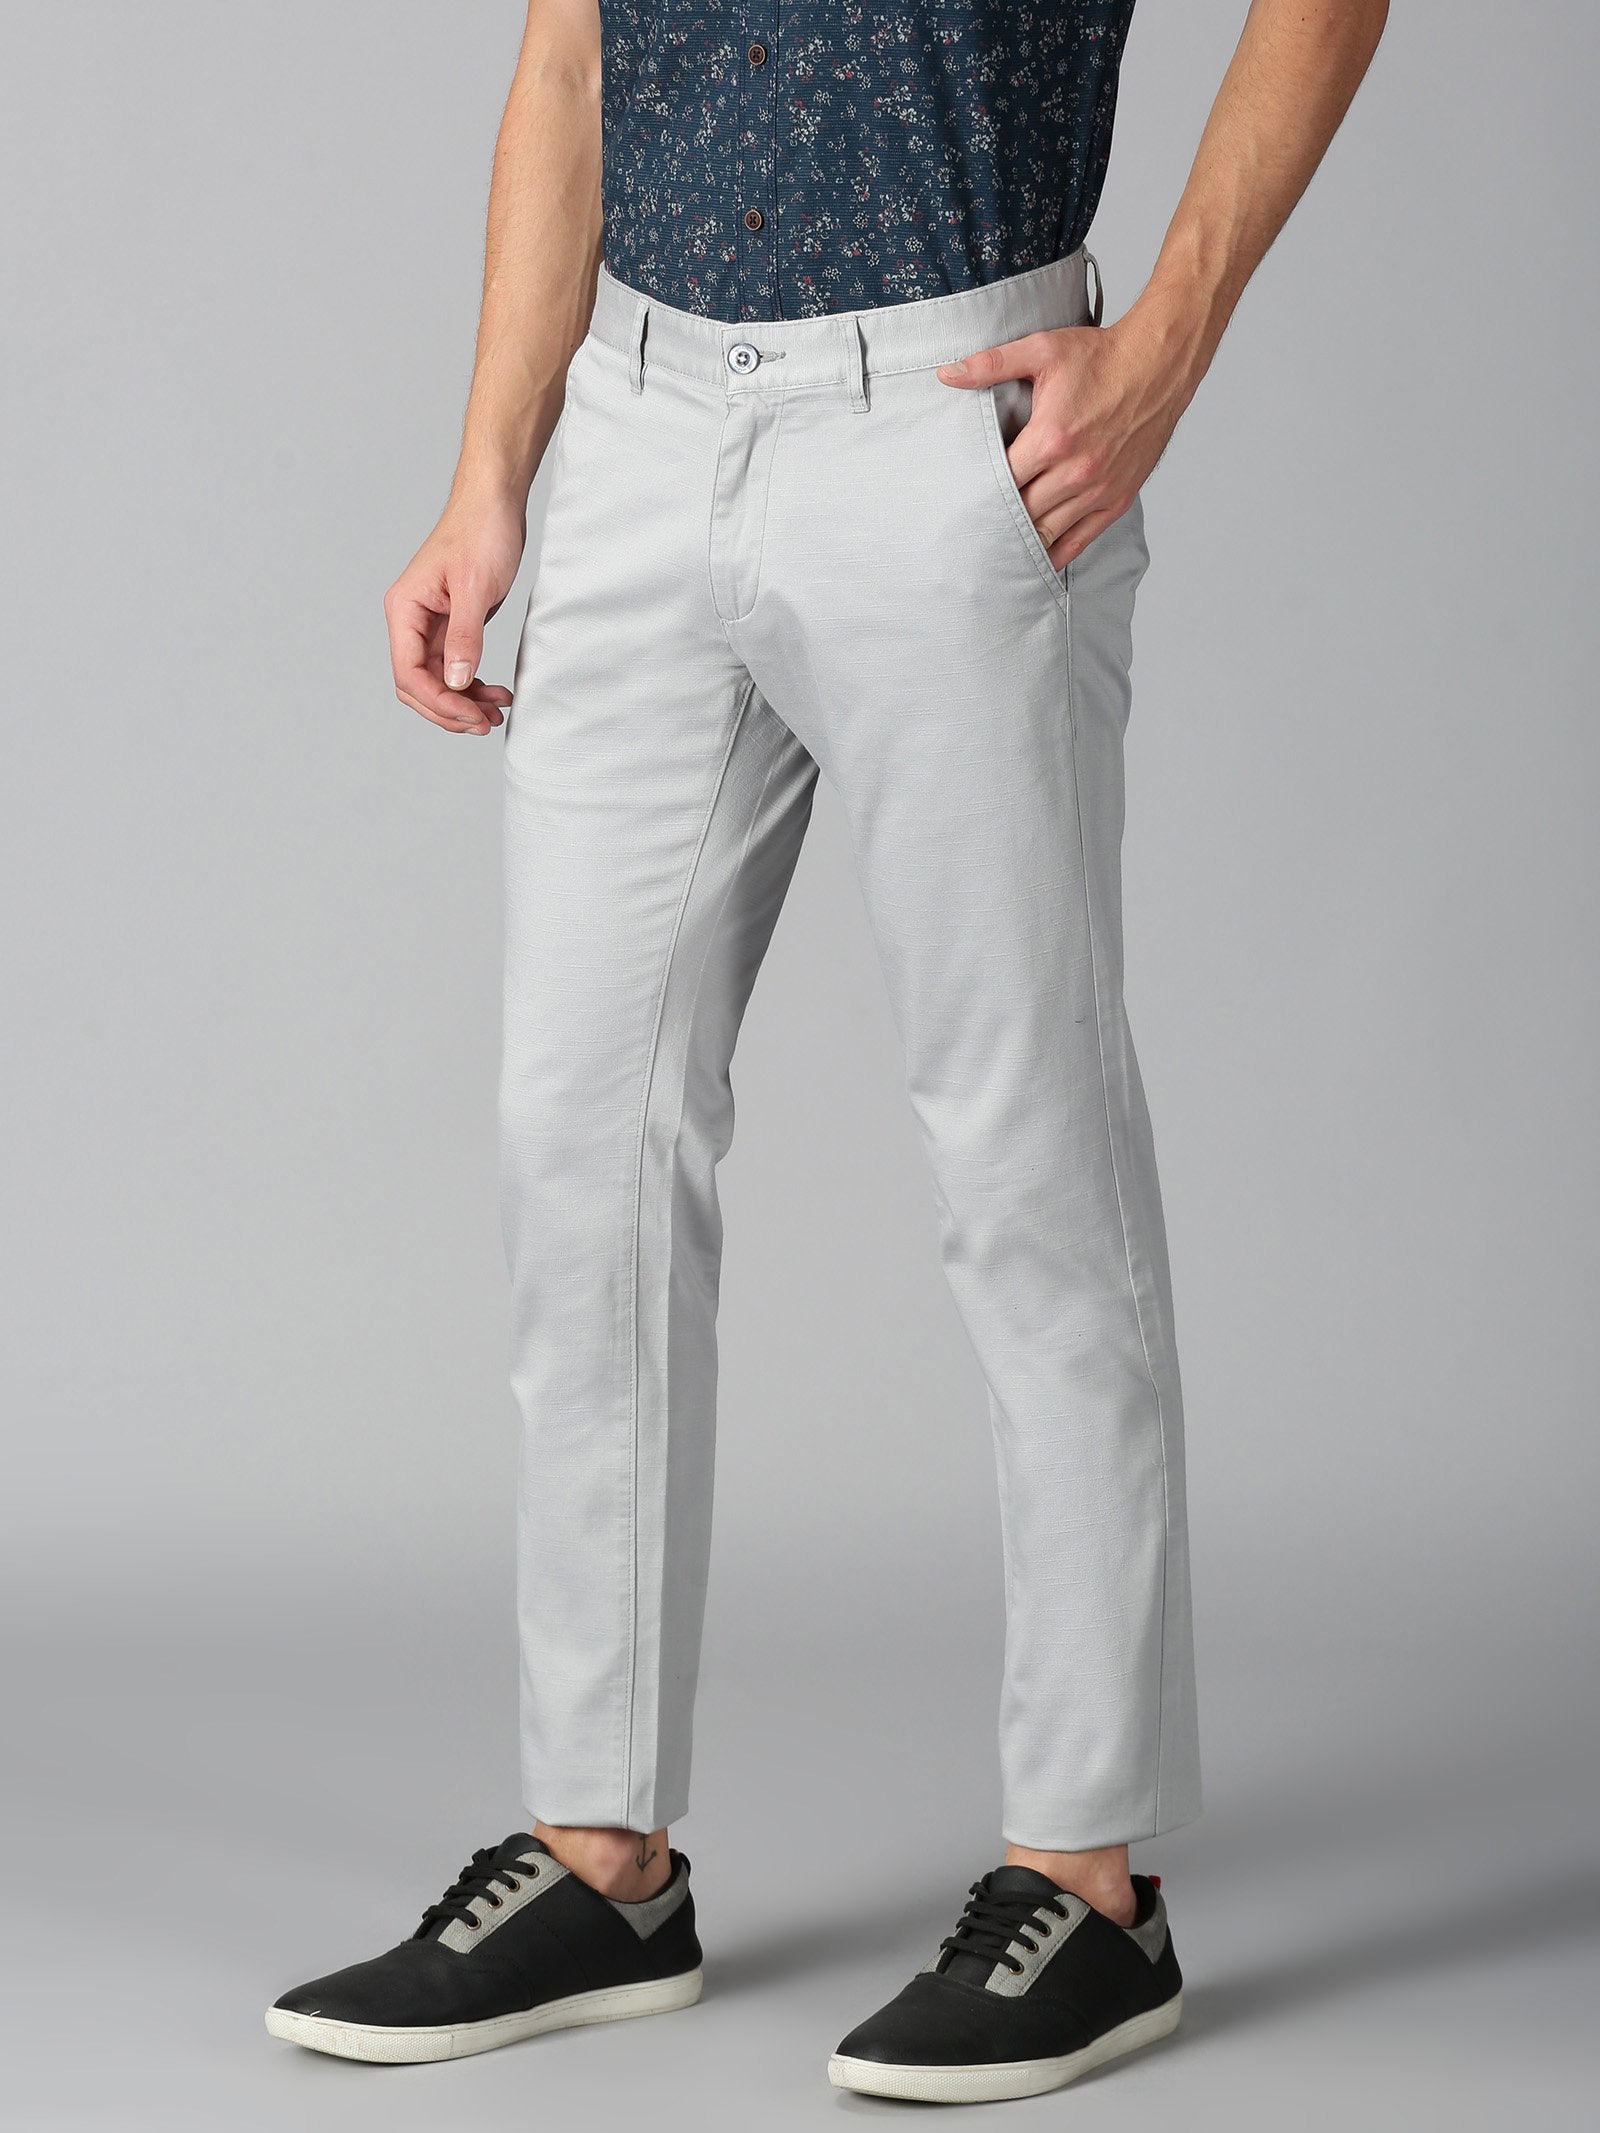 Formal Trouser: Shop Online Men Beige Cotton Blend Formal Trouser at Cliths